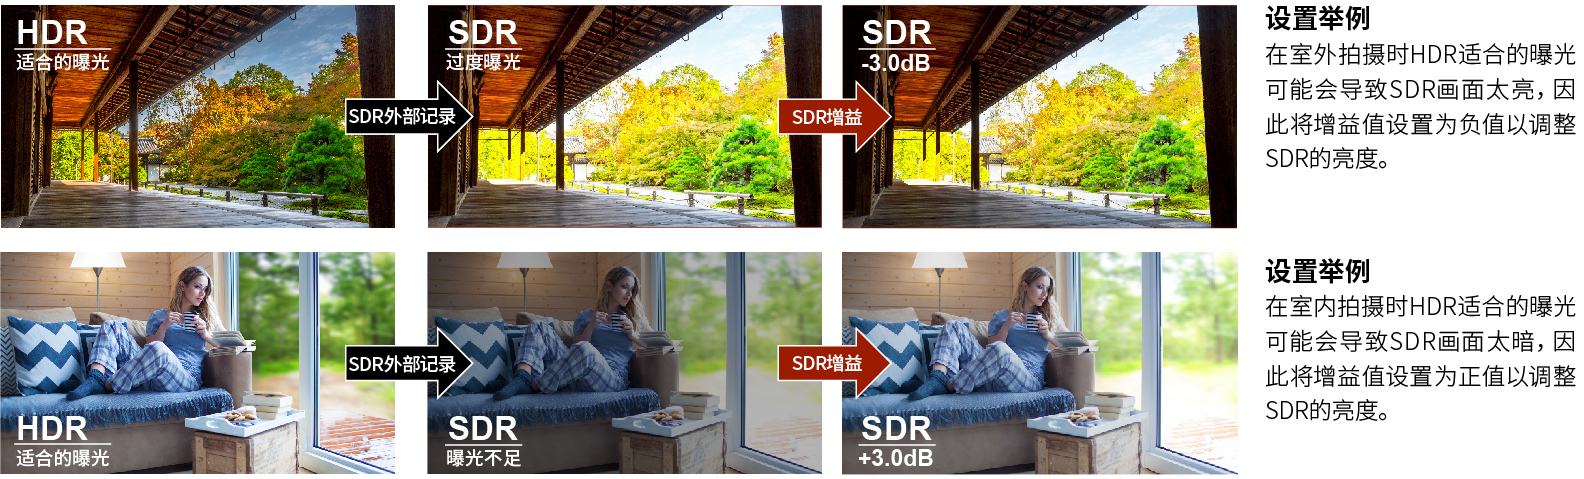 HDR转换为SDR的增益调整